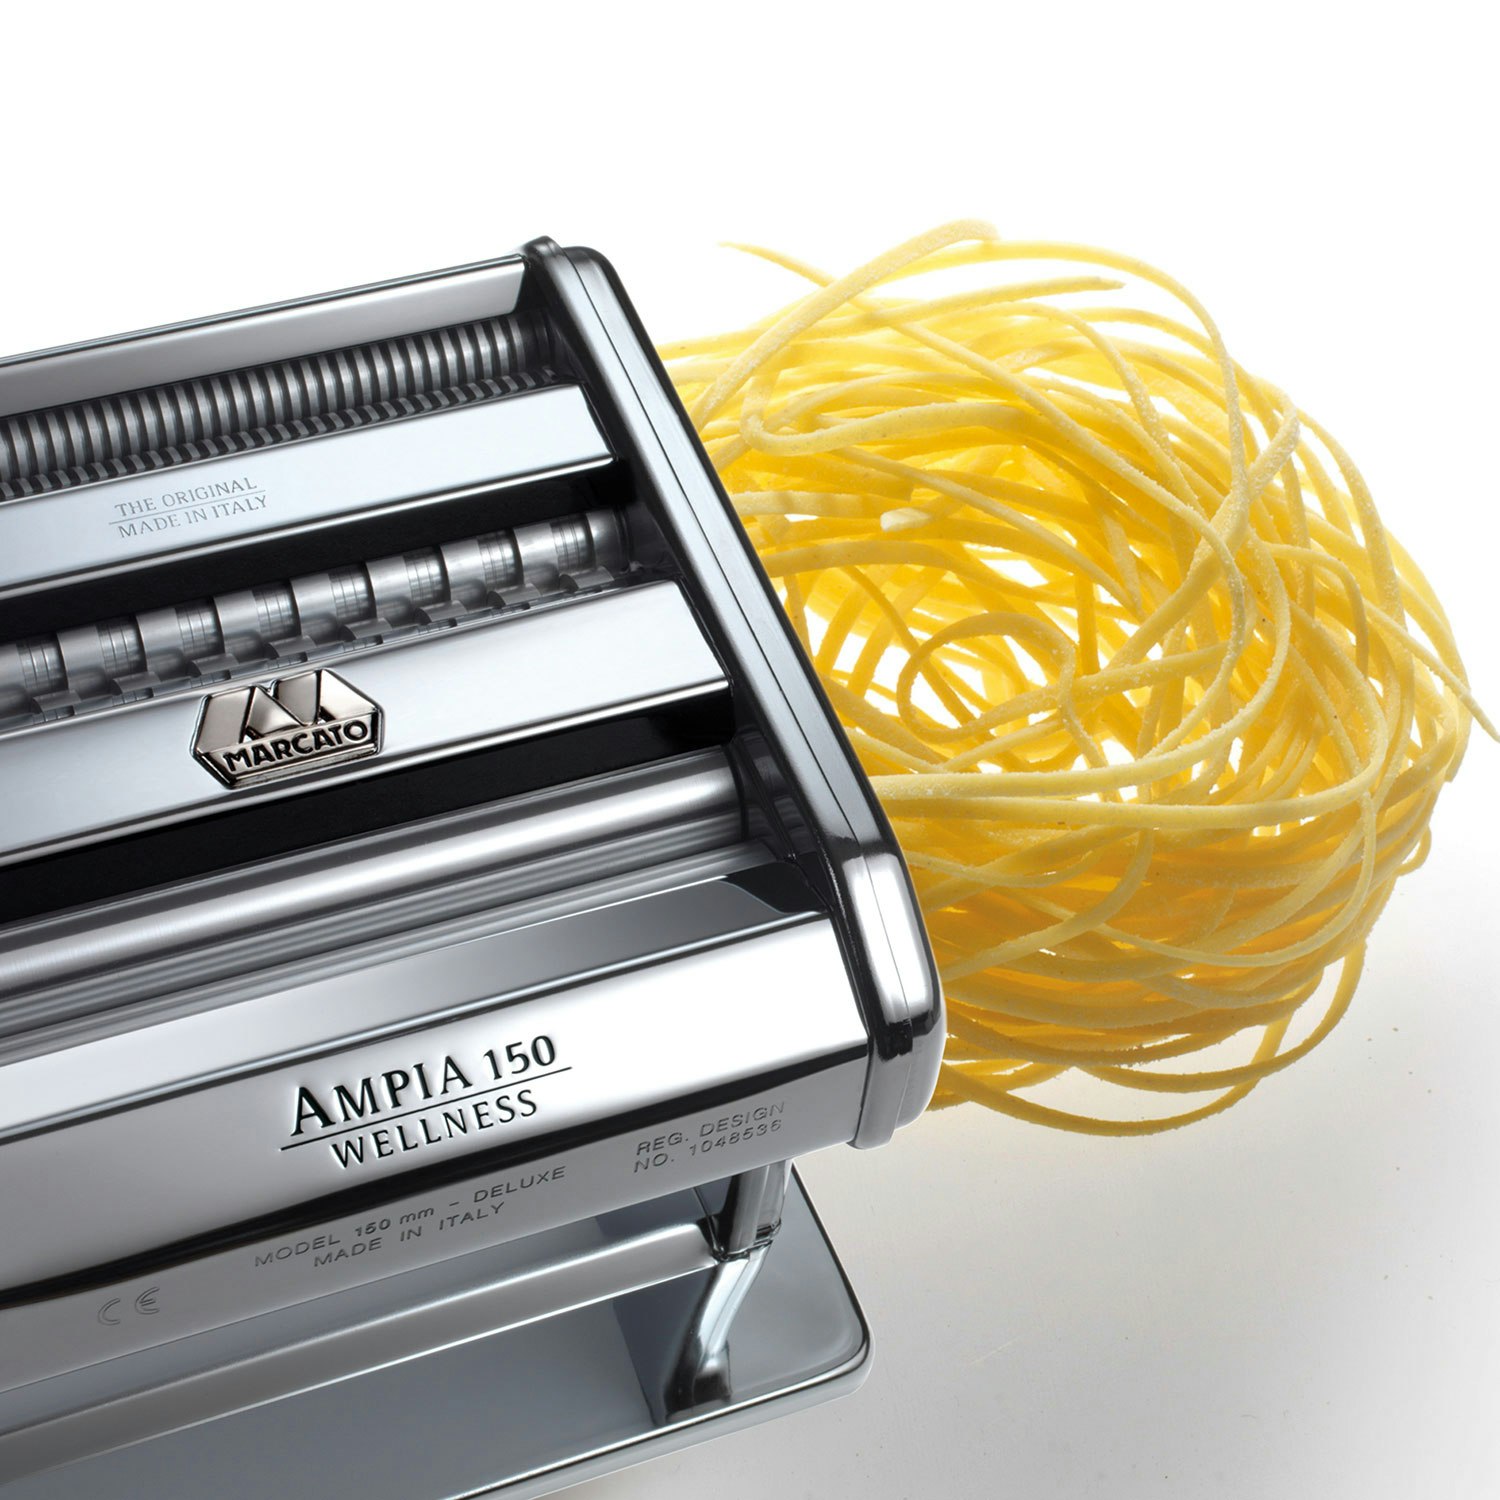 https://royaldesign.com/image/11/marcato-ampia-180-noodle-machine-stainless-1